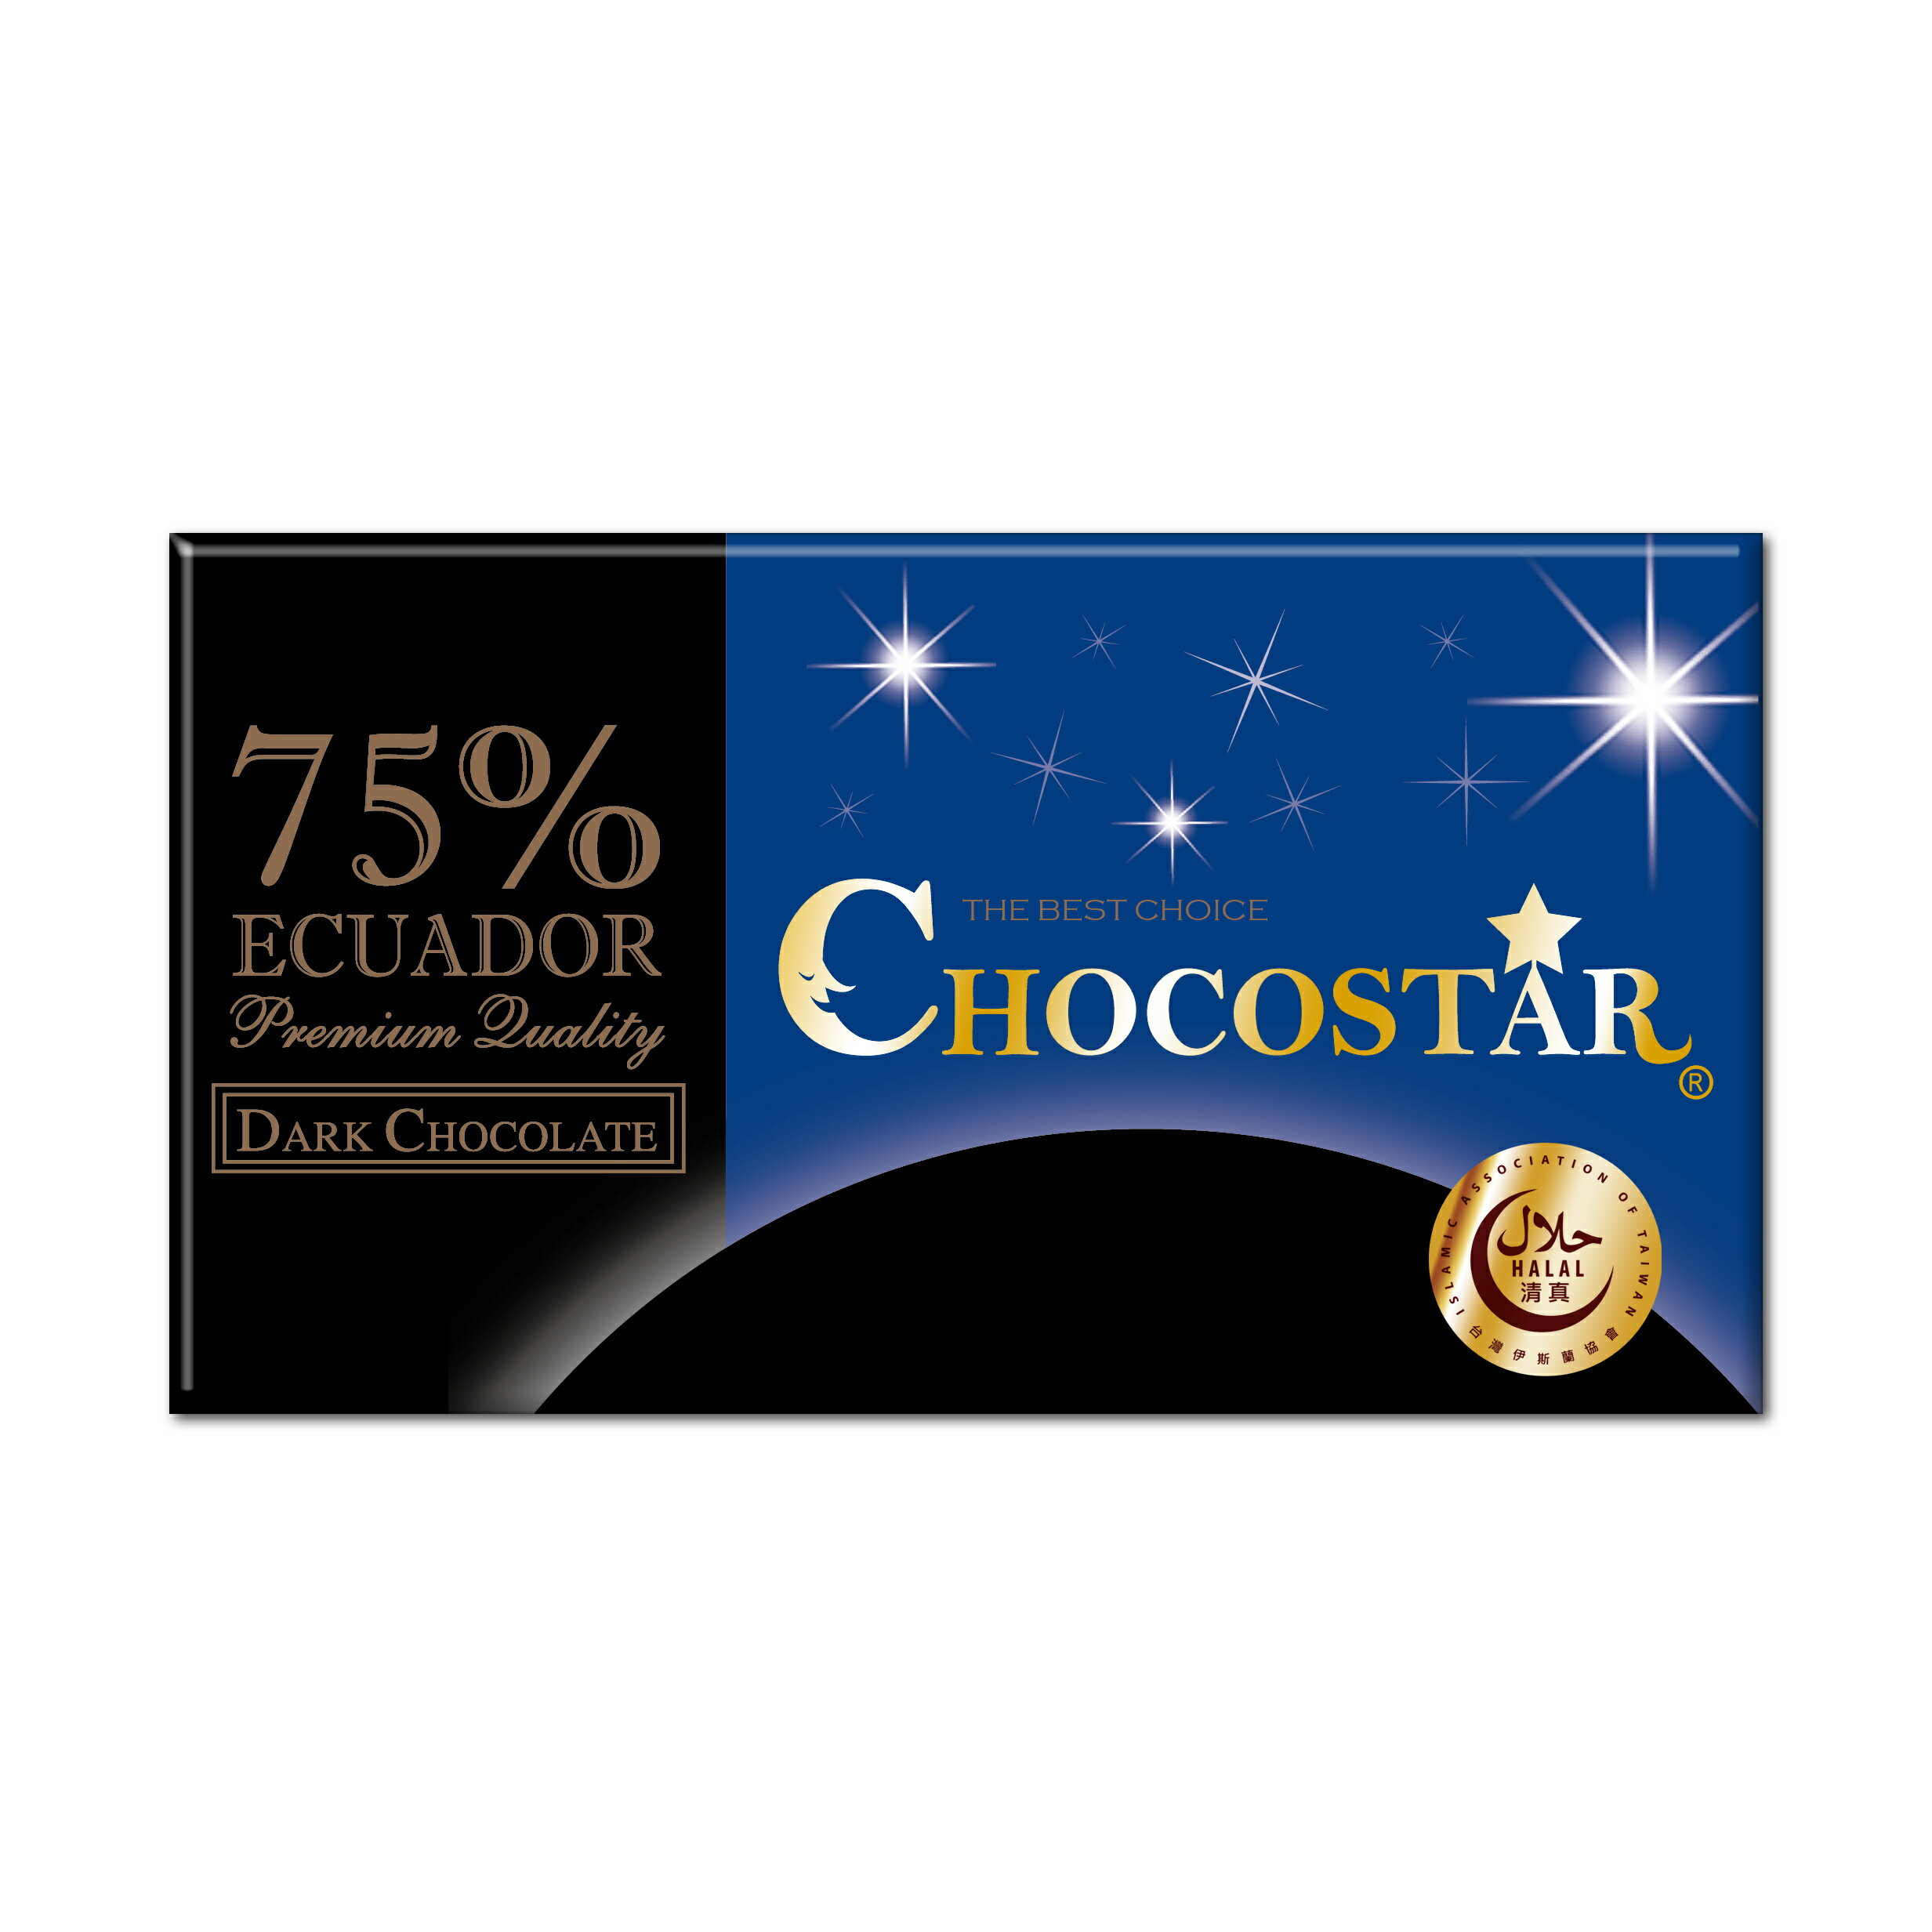 【巧克力雲莊】巧克之星-厄瓜多75%黑巧克力